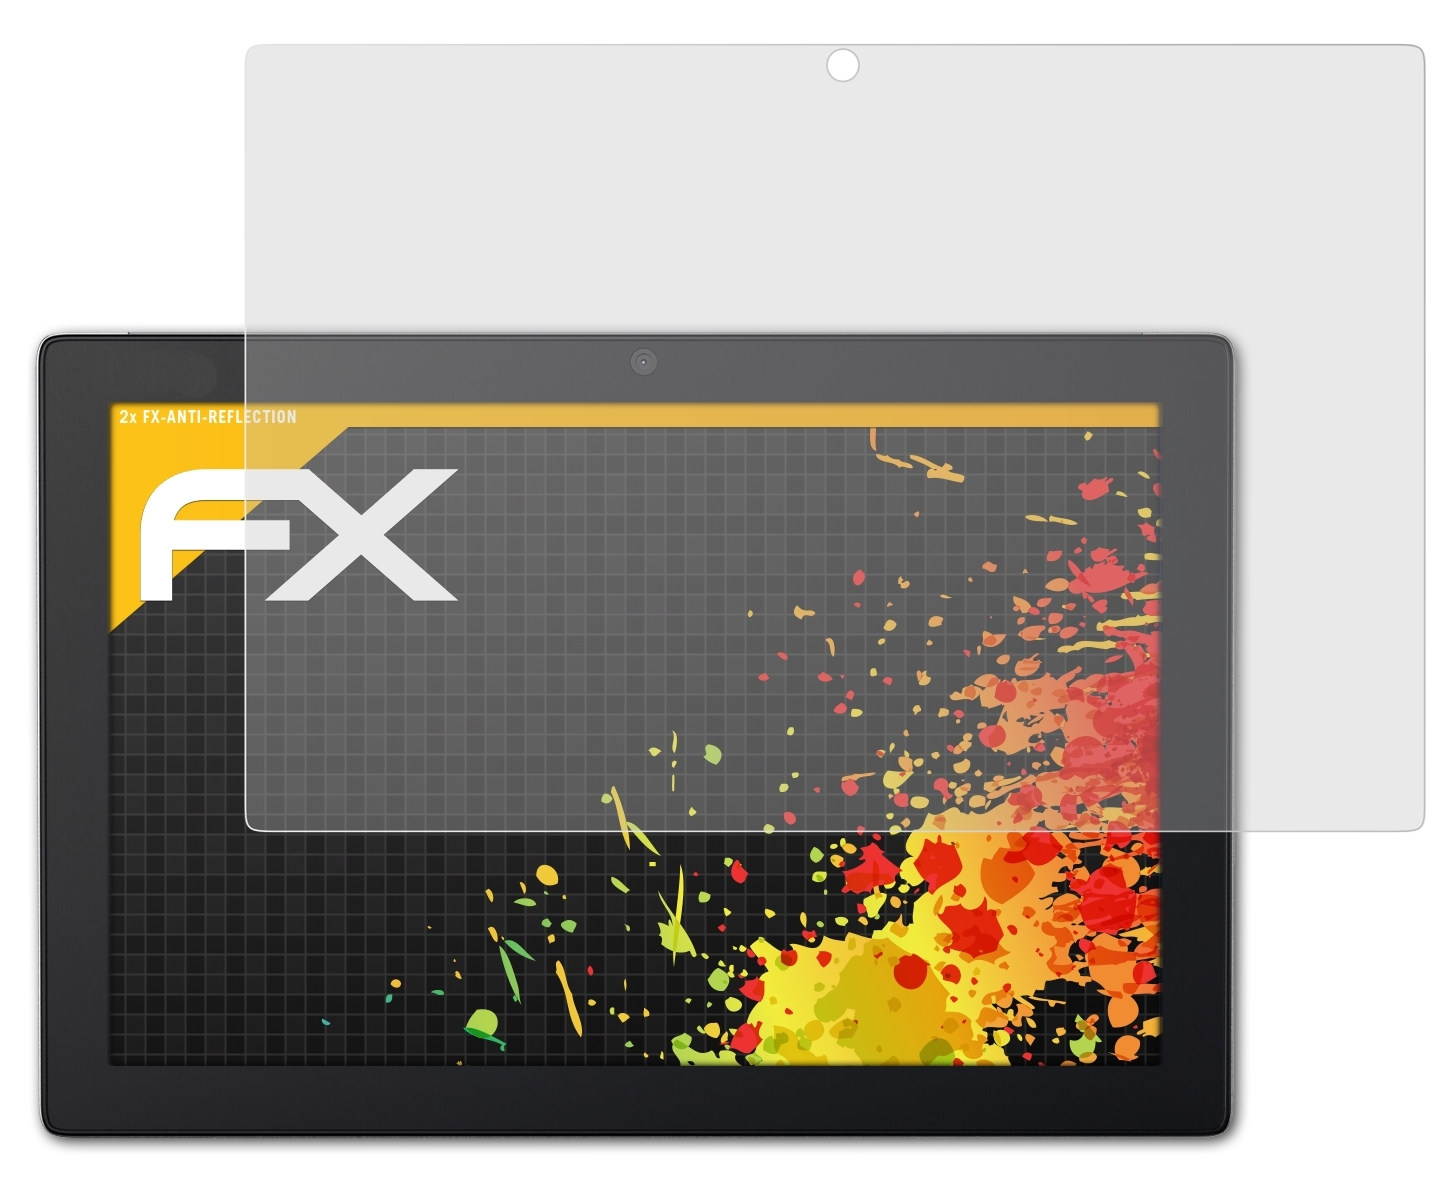 ATFOLIX 2x FX-Antireflex Lenovo IdeaPad MIIX (510-12ISK)) Displayschutz(für